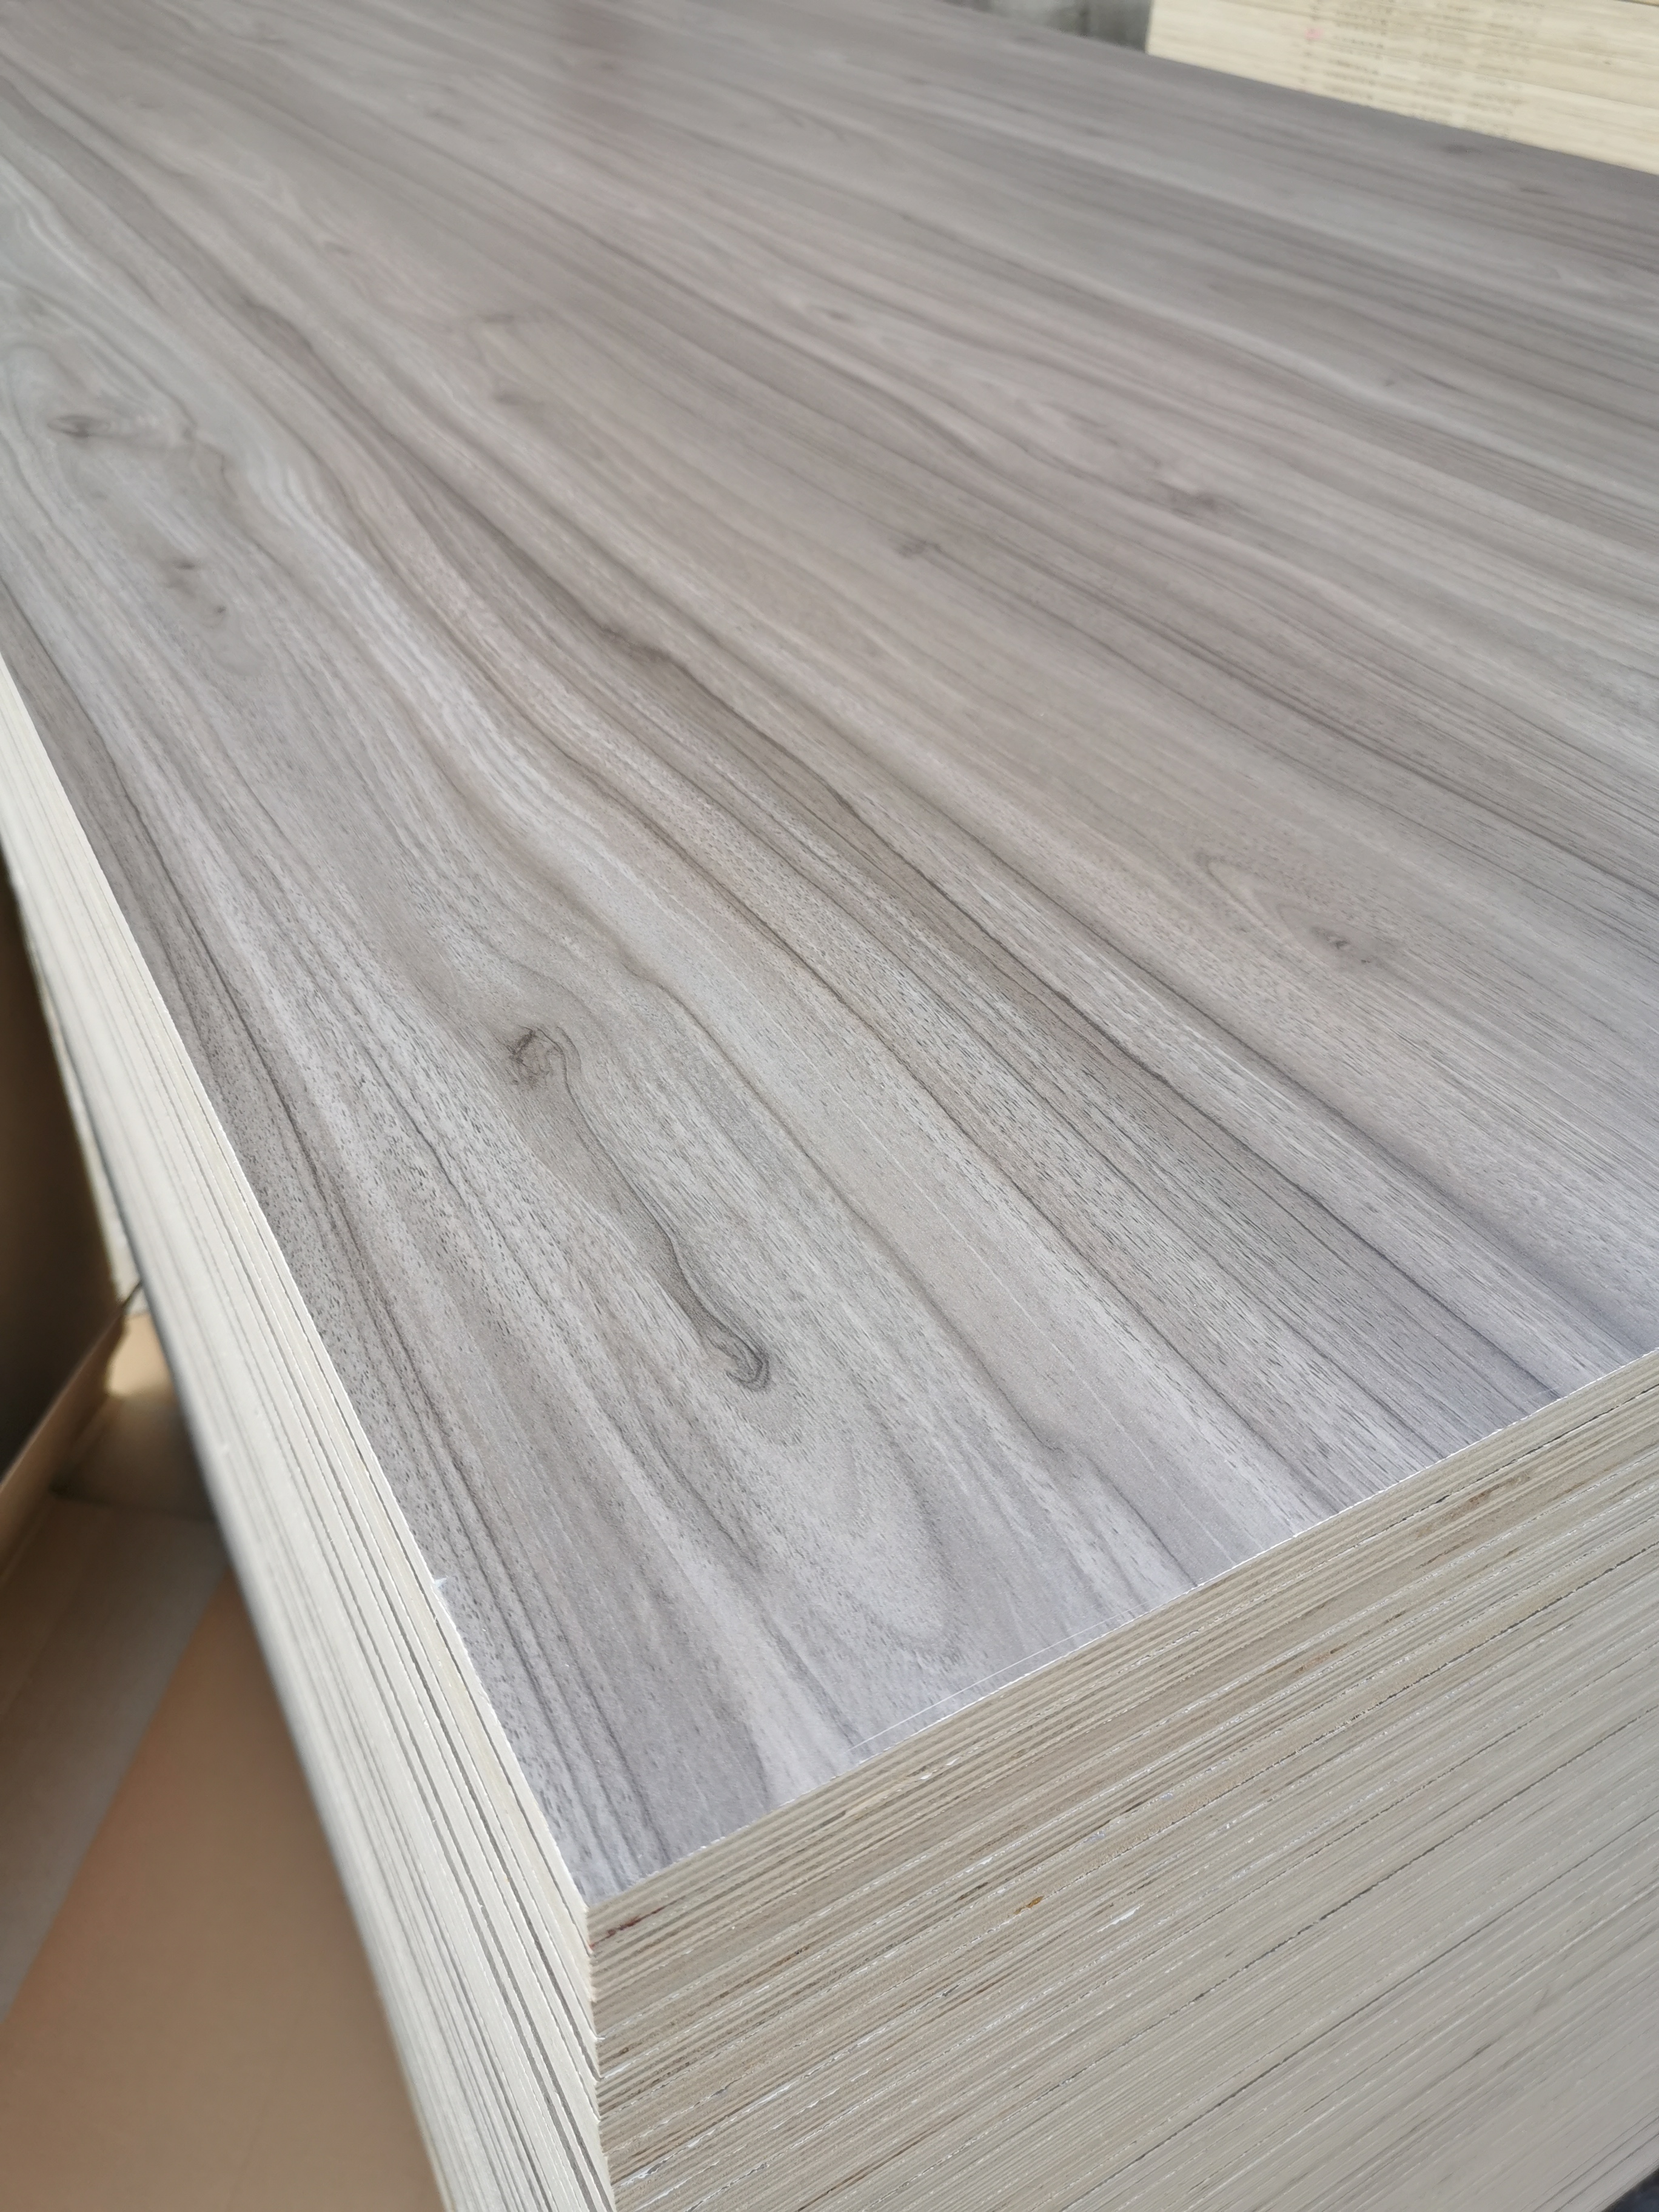 good quality melamine laminated plywood with stylish designs